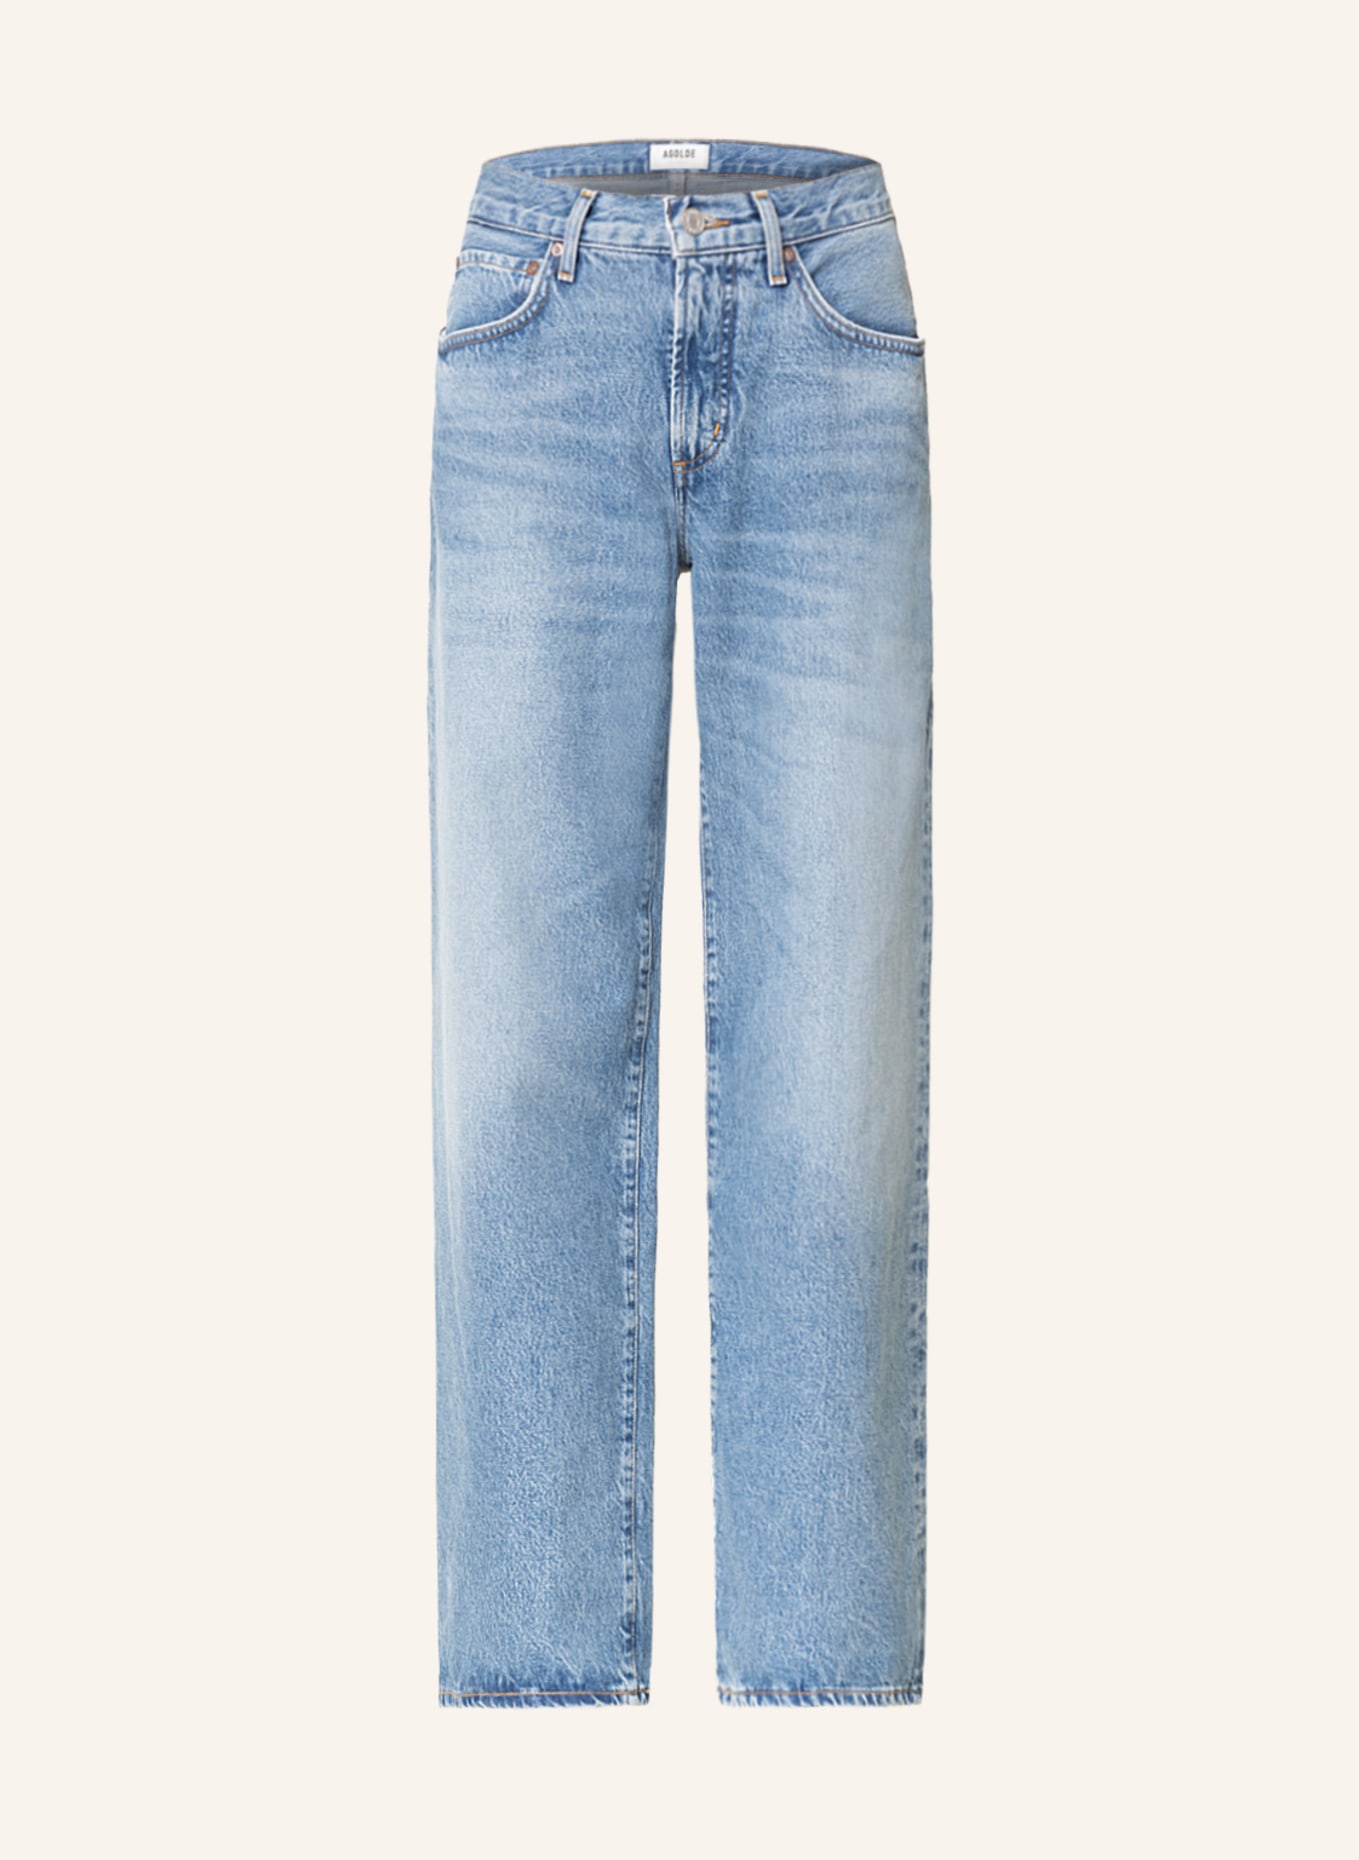 AGOLDE Straight Jeans FUSION, Farbe: renounce md vint indigo (Bild 1)